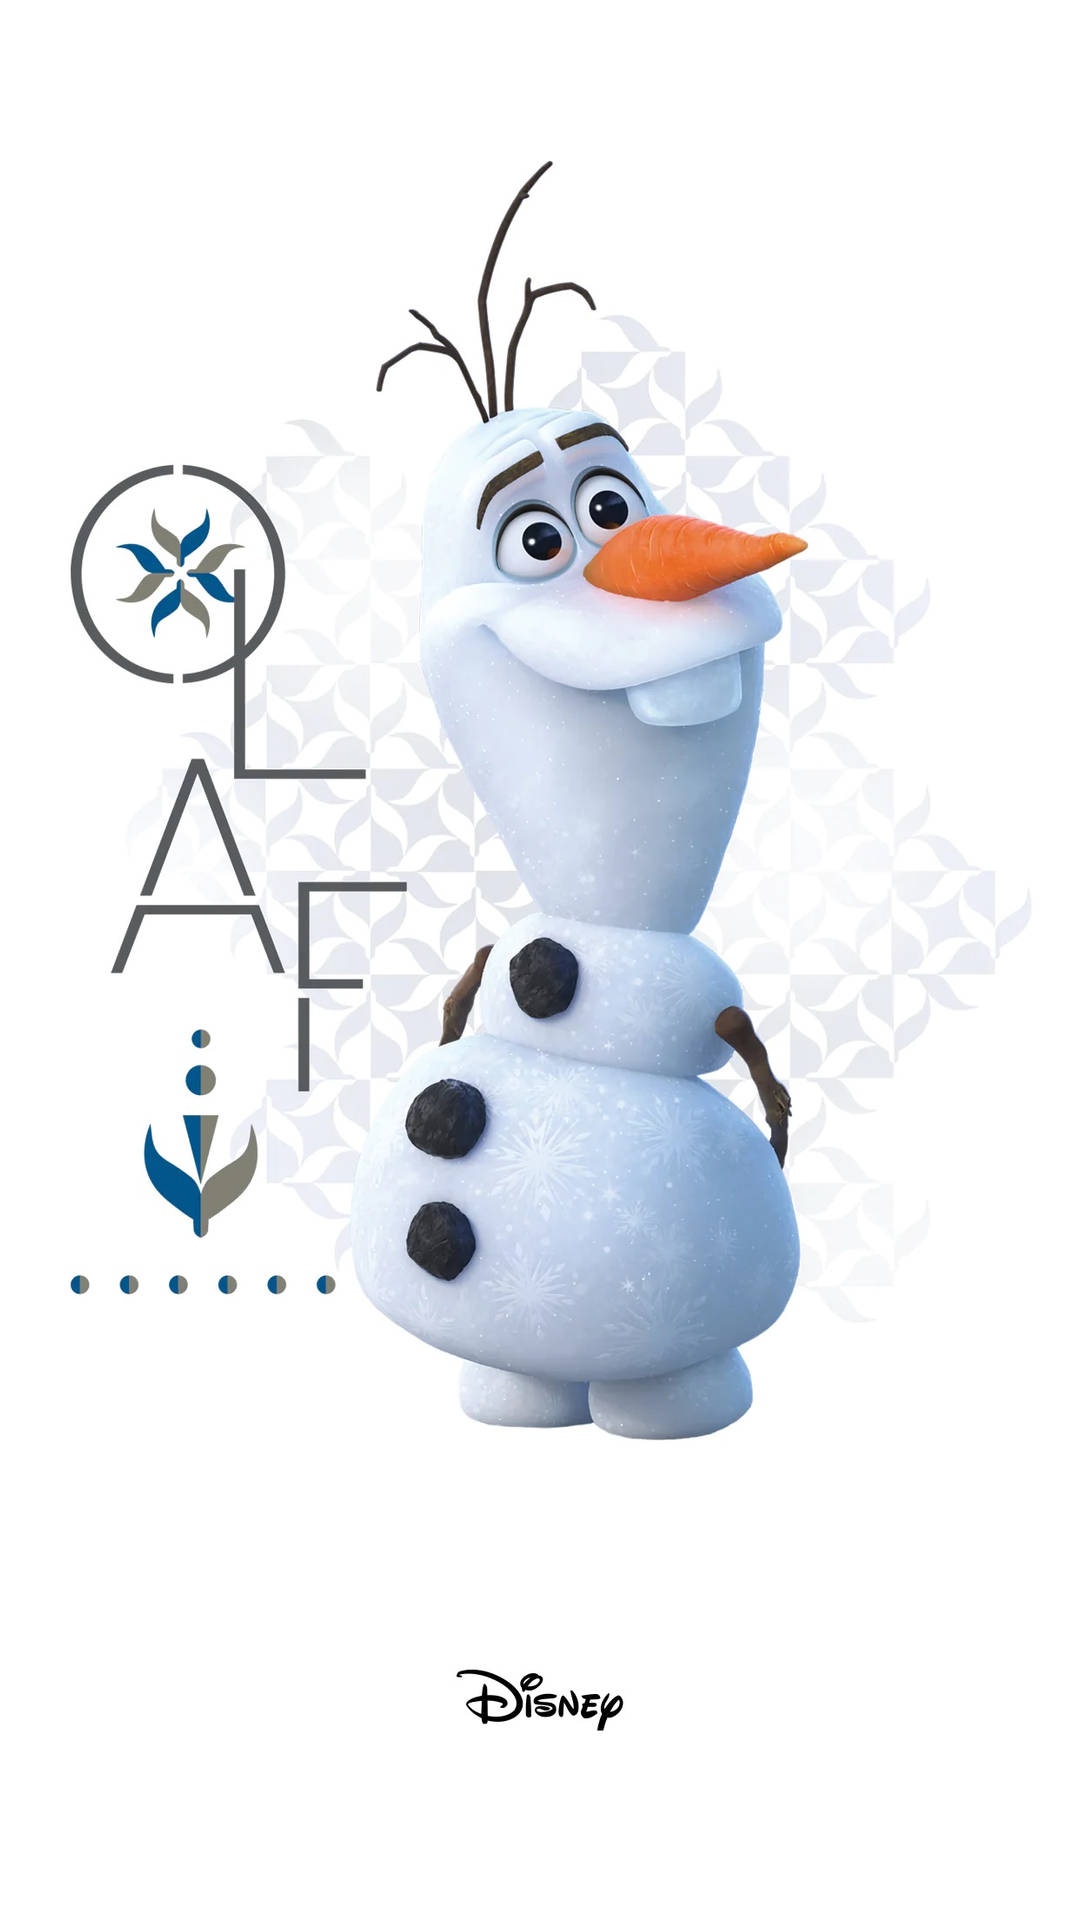 Olaf Of Disney's Frozen Wallpaper